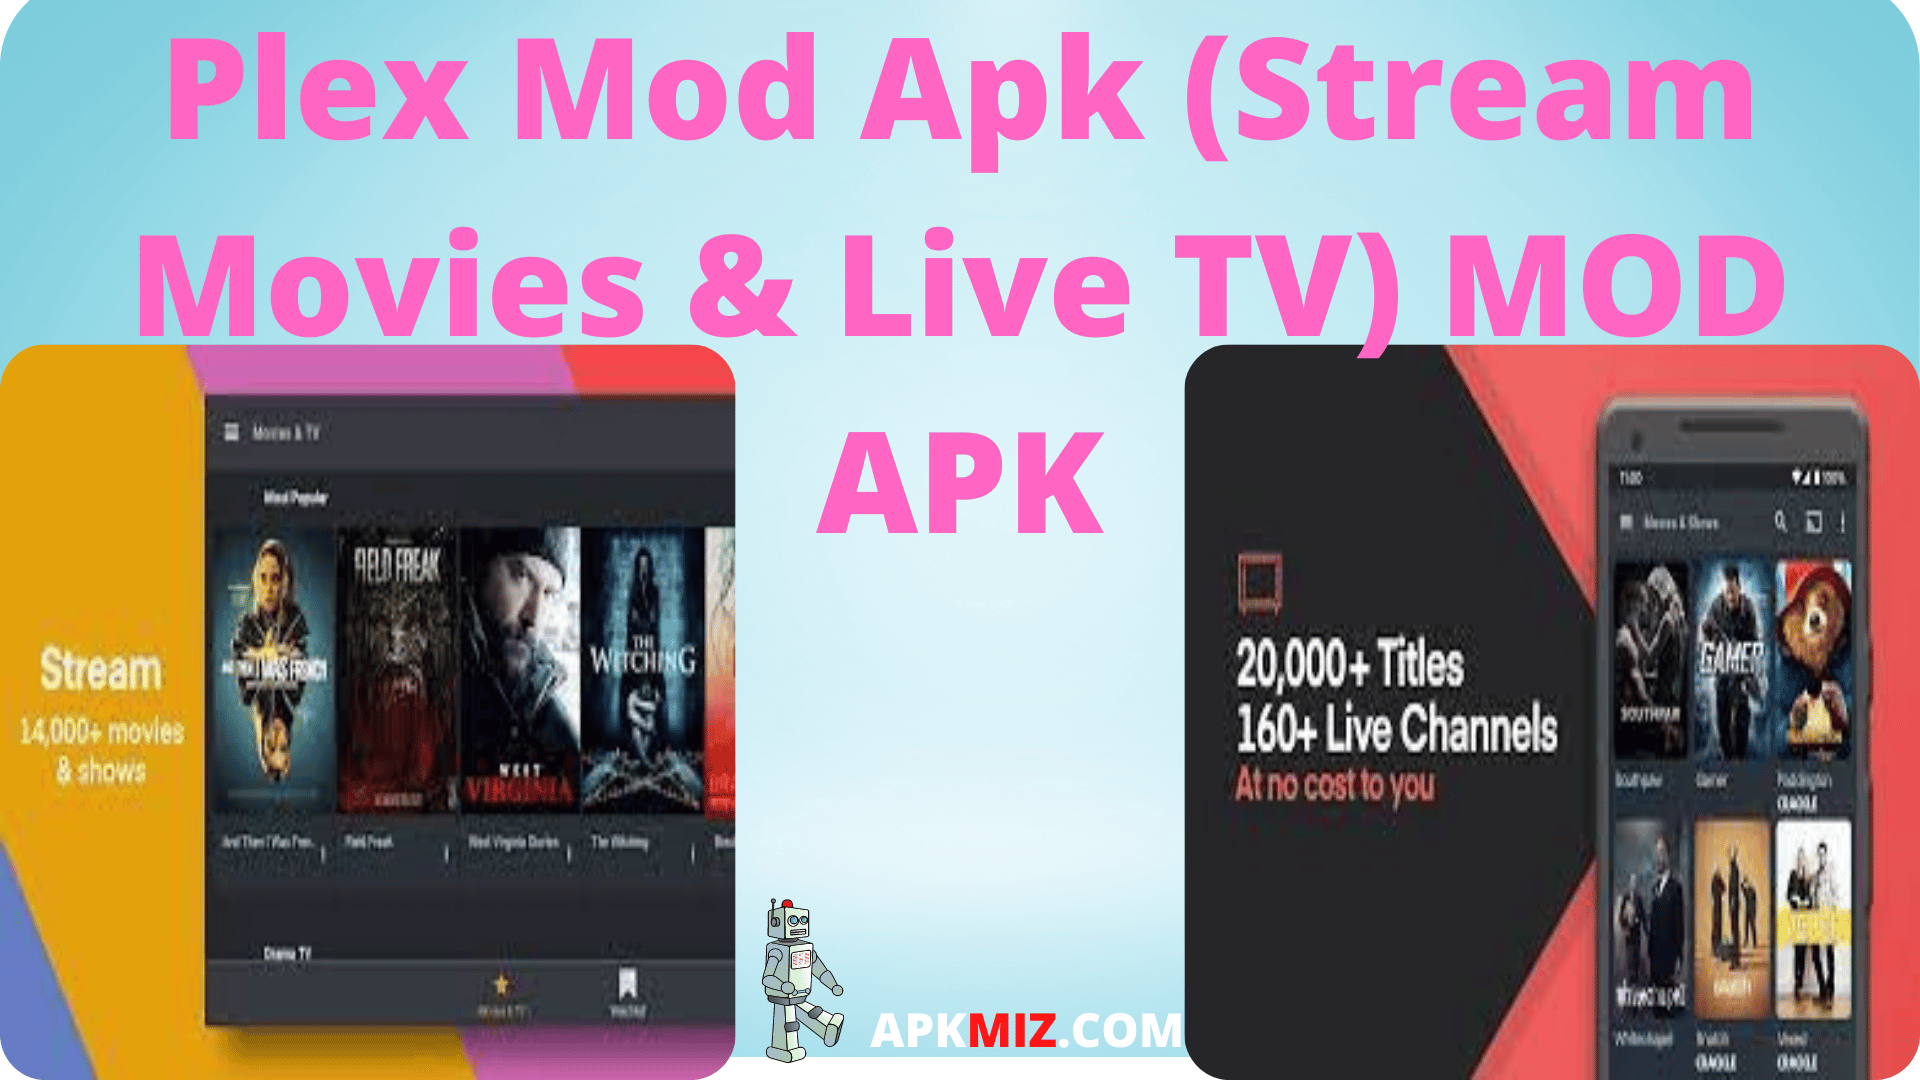 Plex Mod Apk (Stream Movies & Live TV)